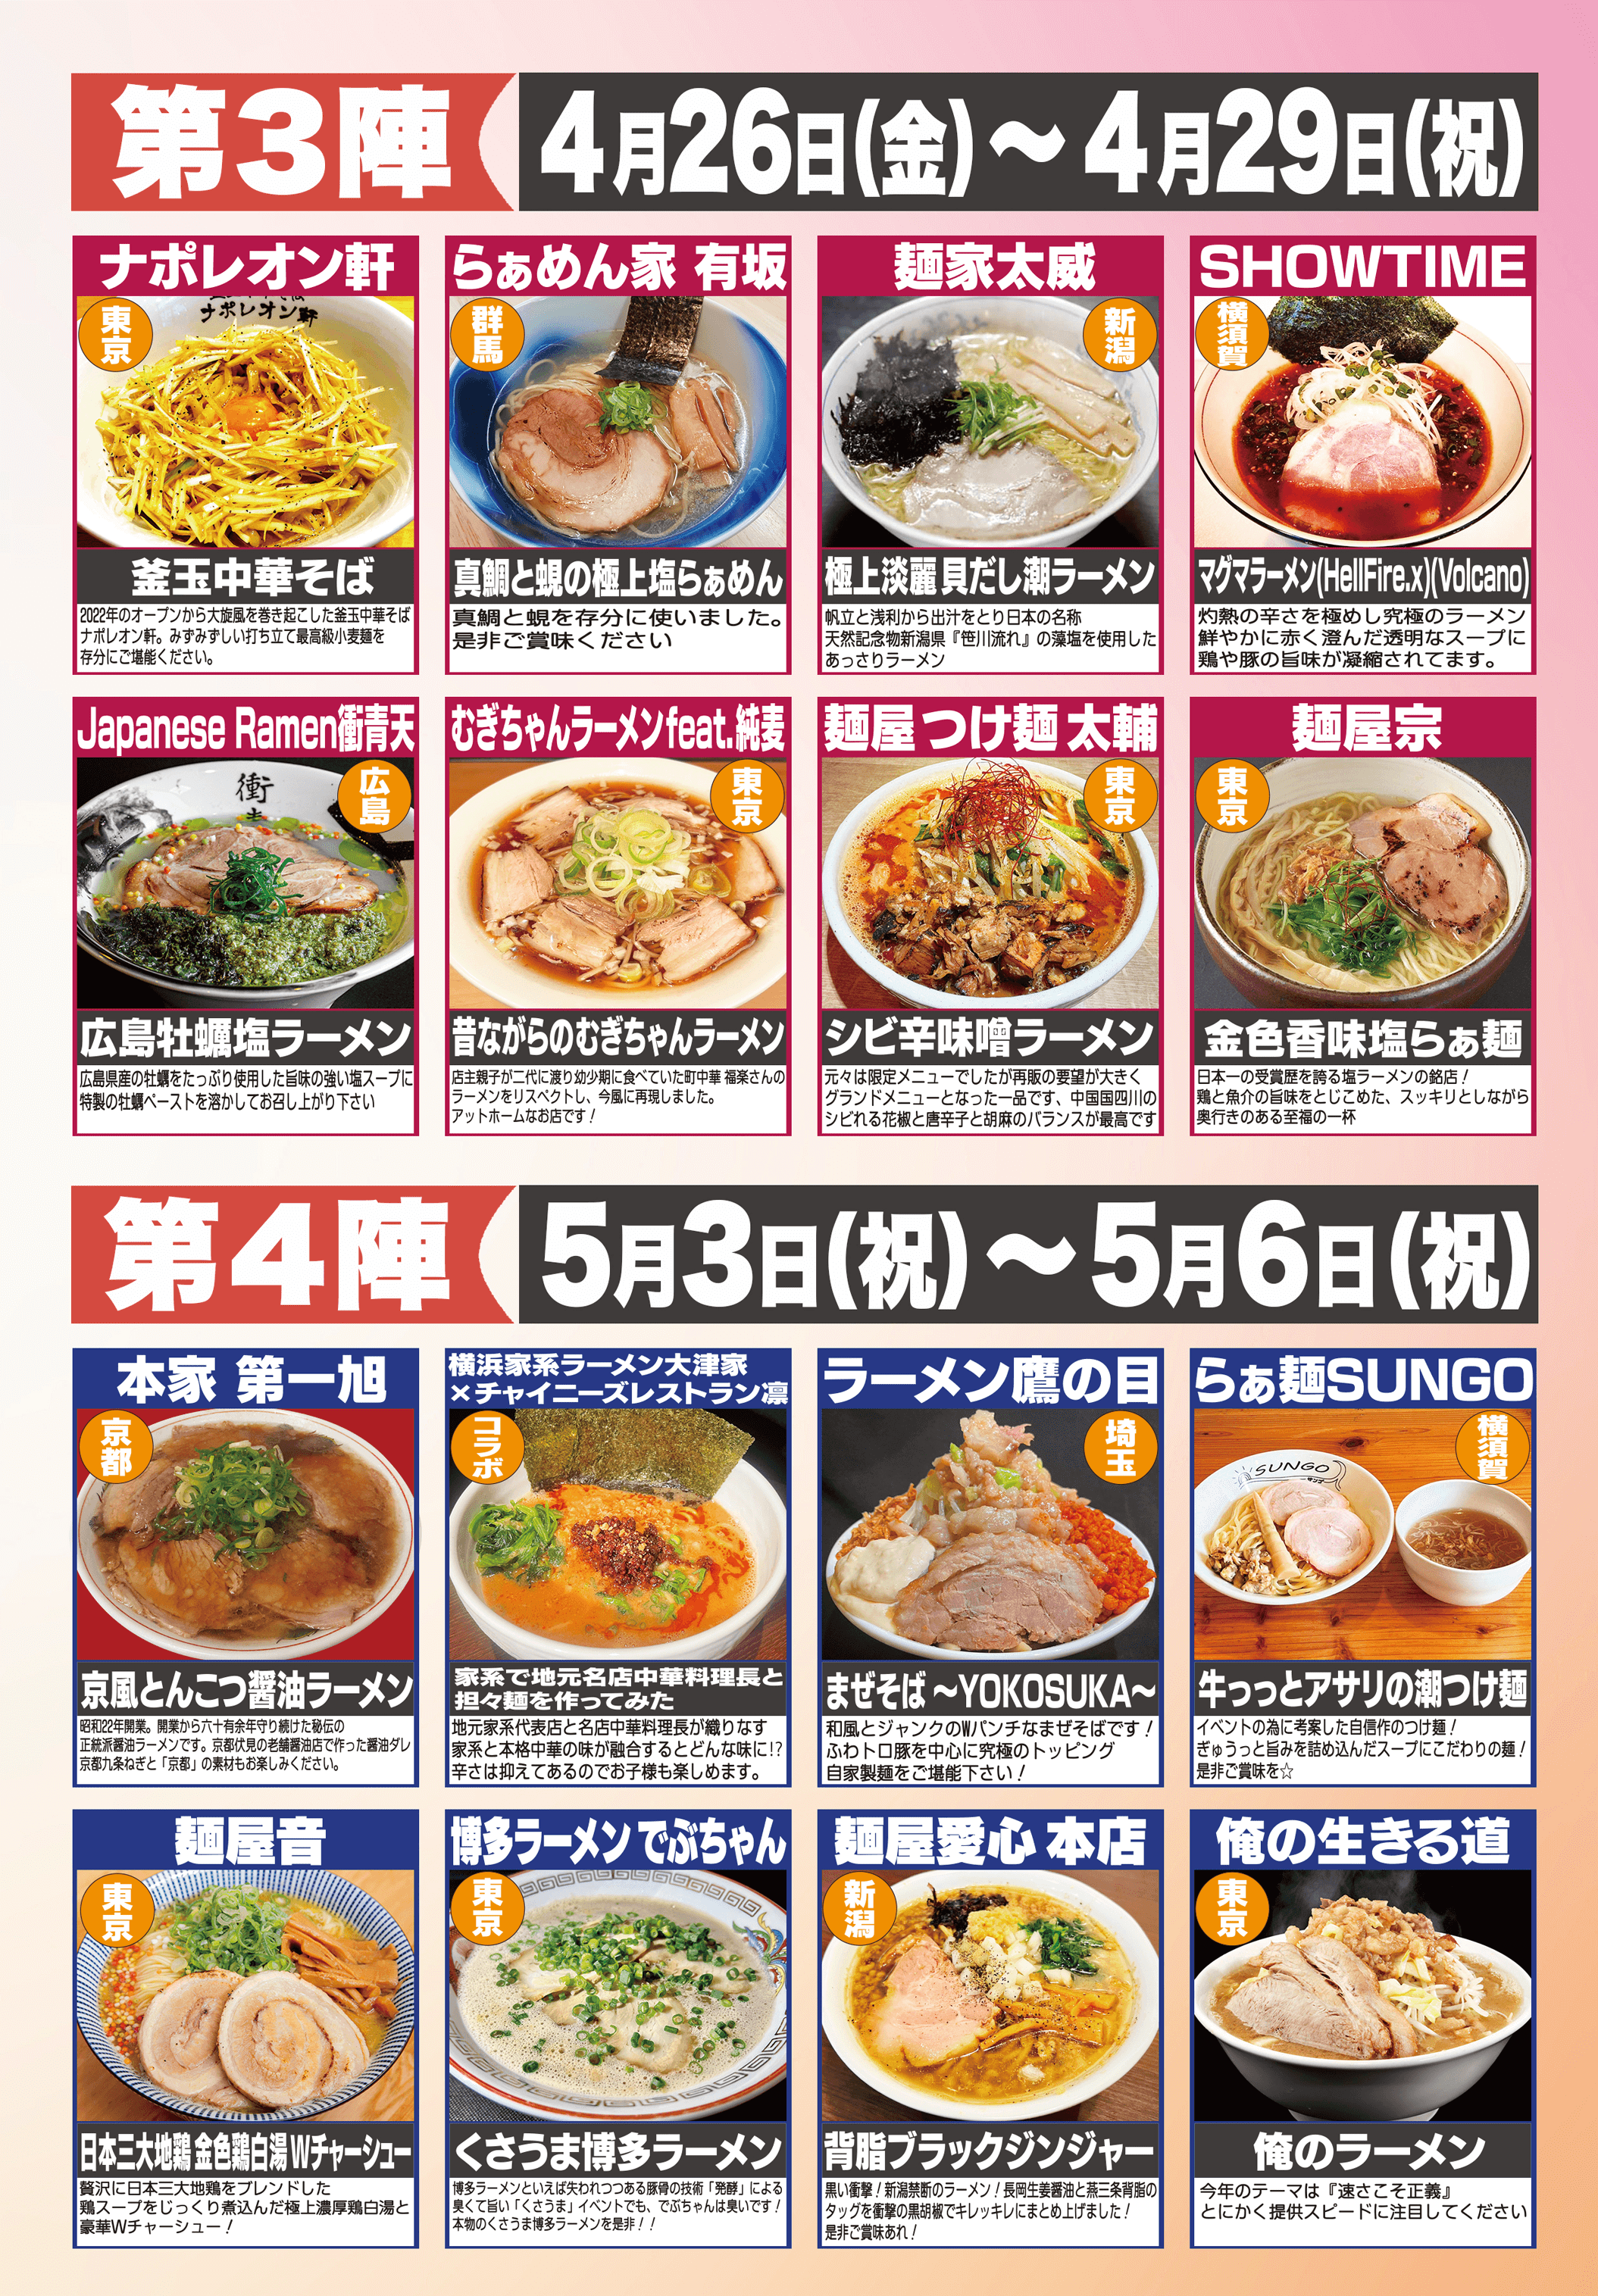 大つけ麺博Presents よこすかラーメン艦隊　横須賀市三笠公園で初開催！